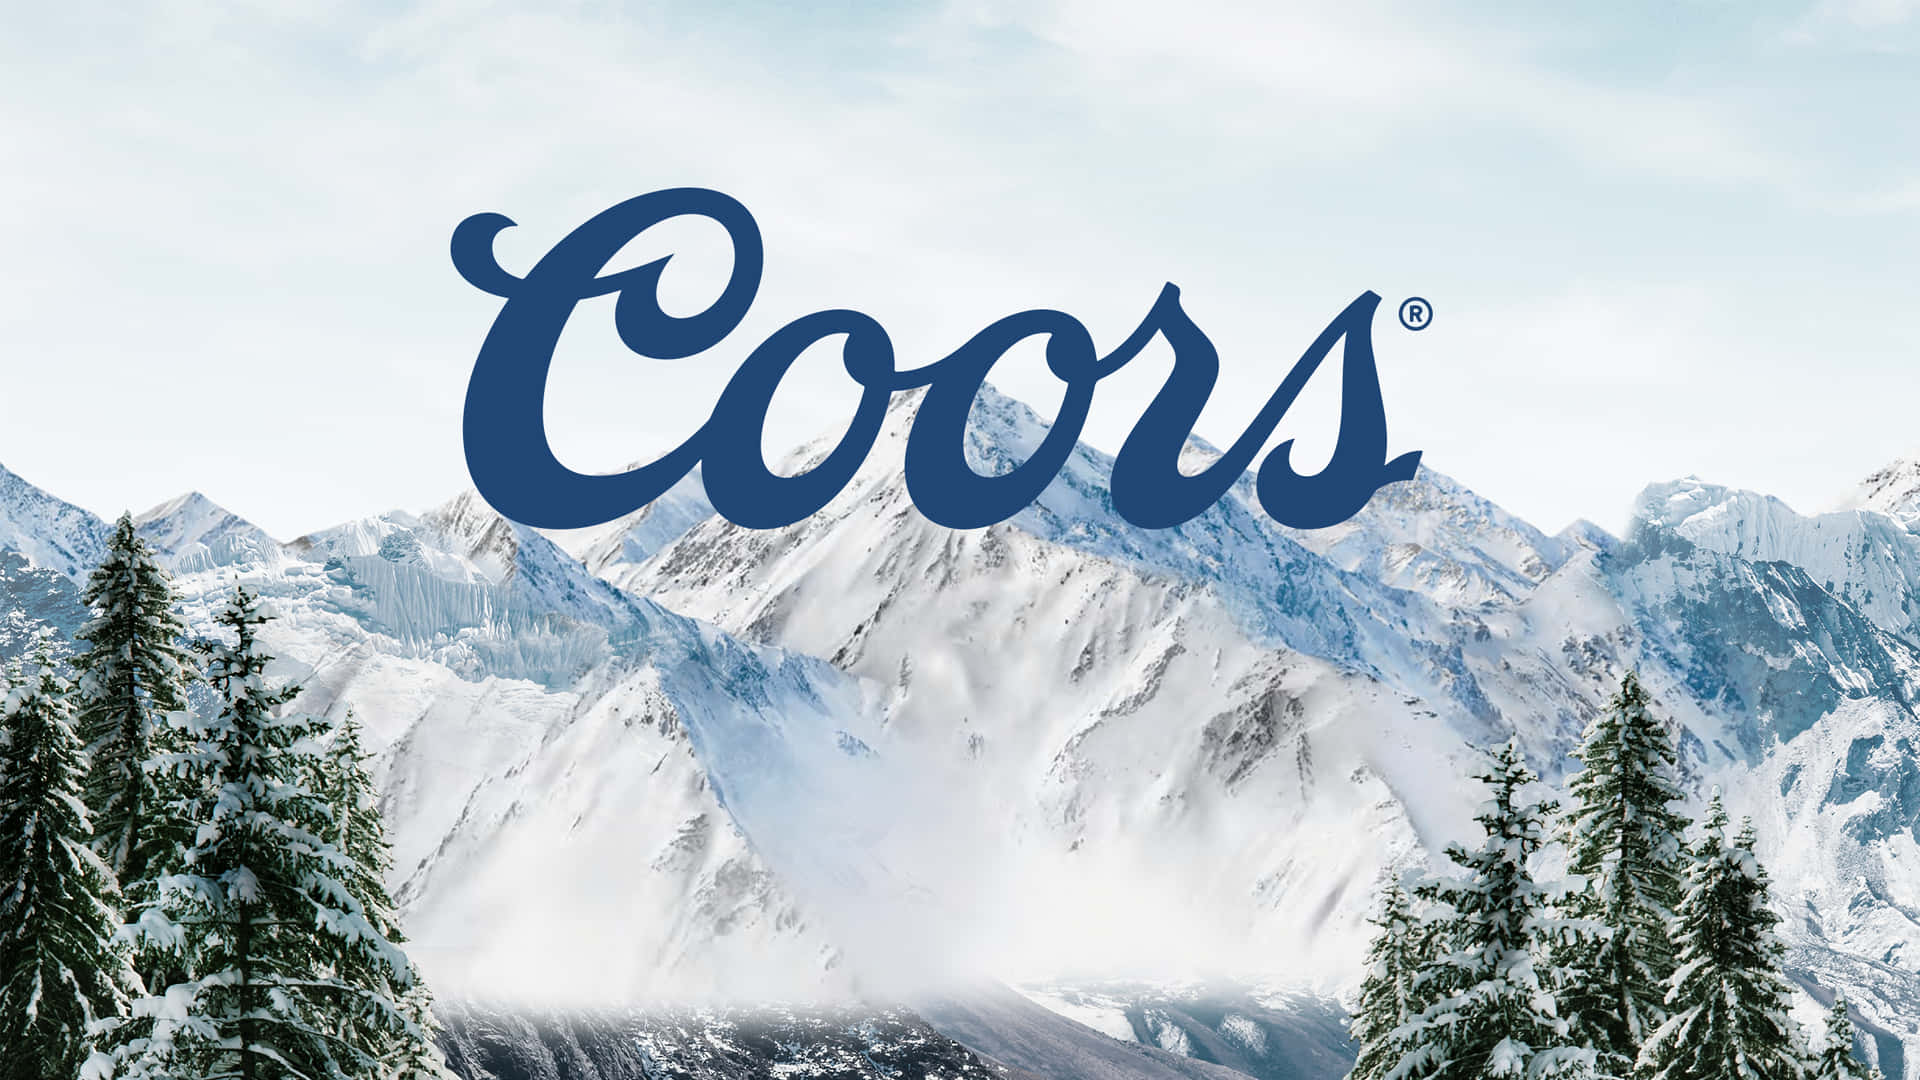 Erlebensie Das Erfrischendste Bier: Coors Light Wallpaper